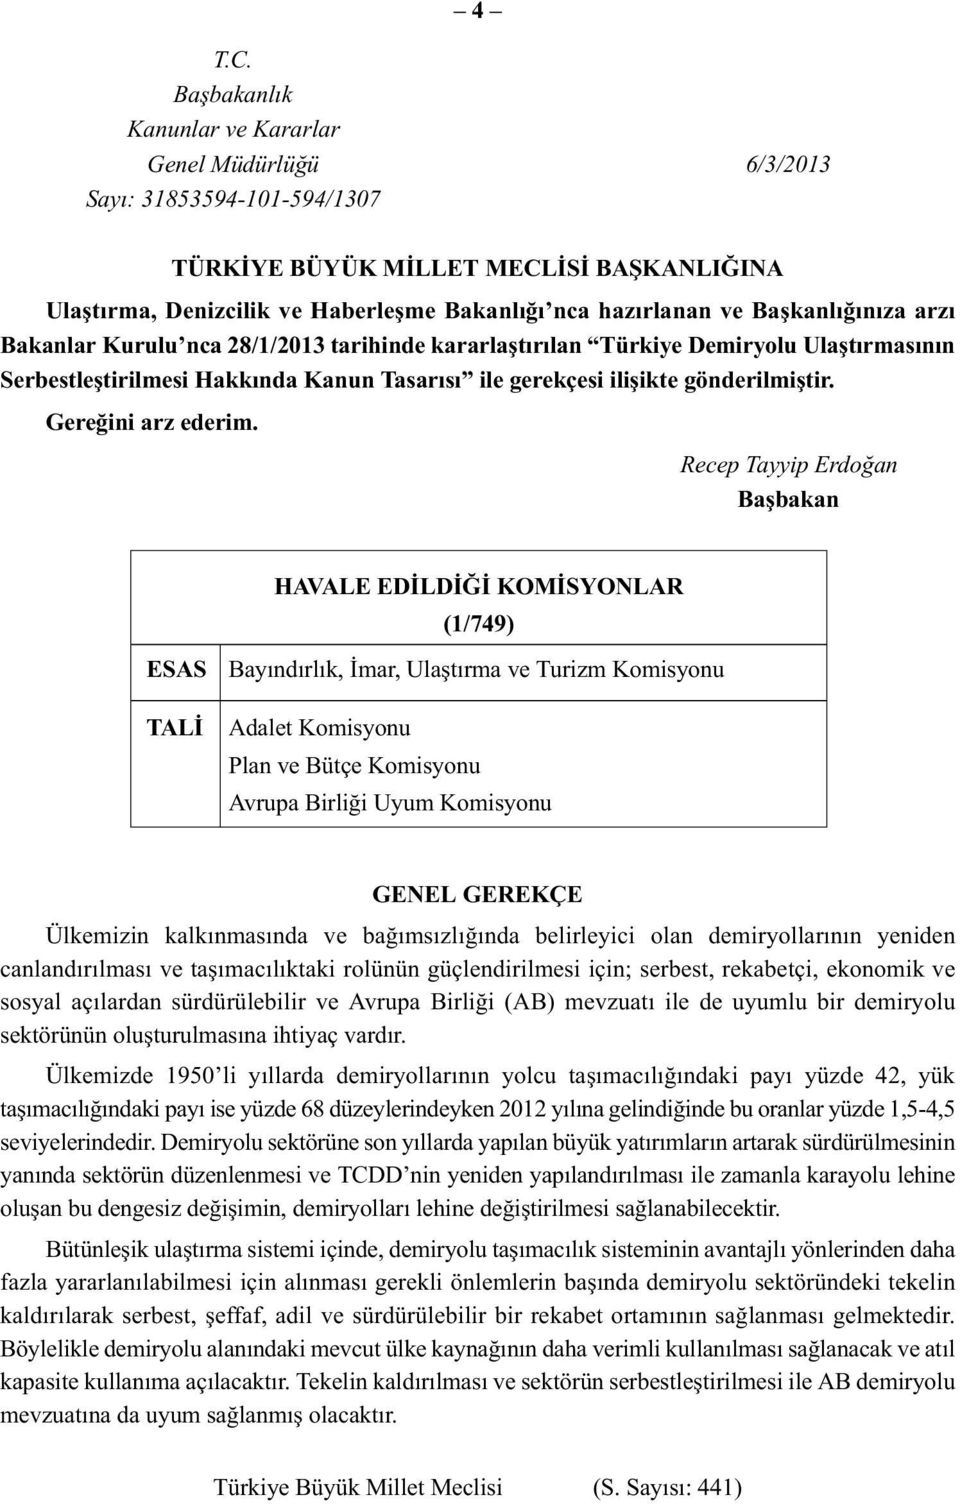 Başkanlığınıza arzı Bakanlar Kurulu nca 28/1/2013 tarihinde kararlaştırılan Türkiye Demiryolu Ulaştırmasının Serbestleştirilmesi Hakkında Kanun Tasarısı ile gerekçesi ilişikte gönderilmiştir.